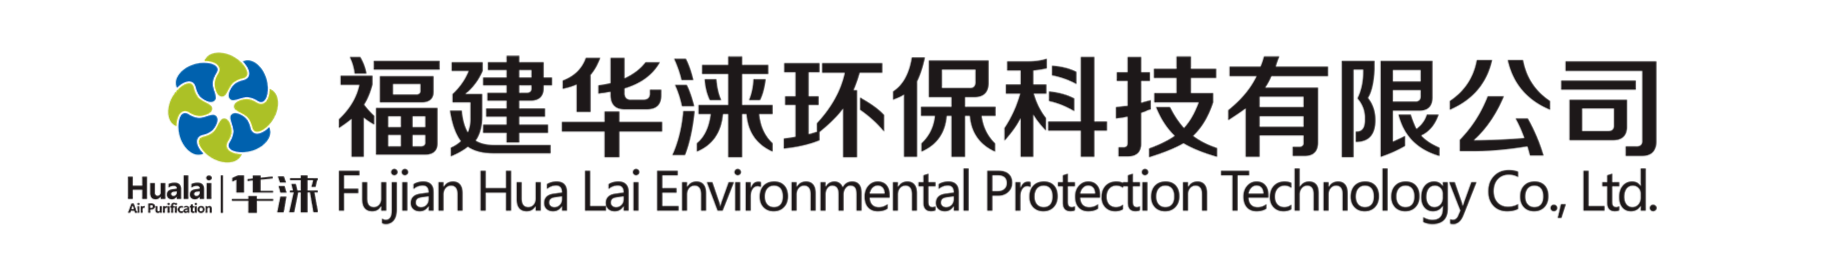 产品中心-福建华涞环保科技有限公司